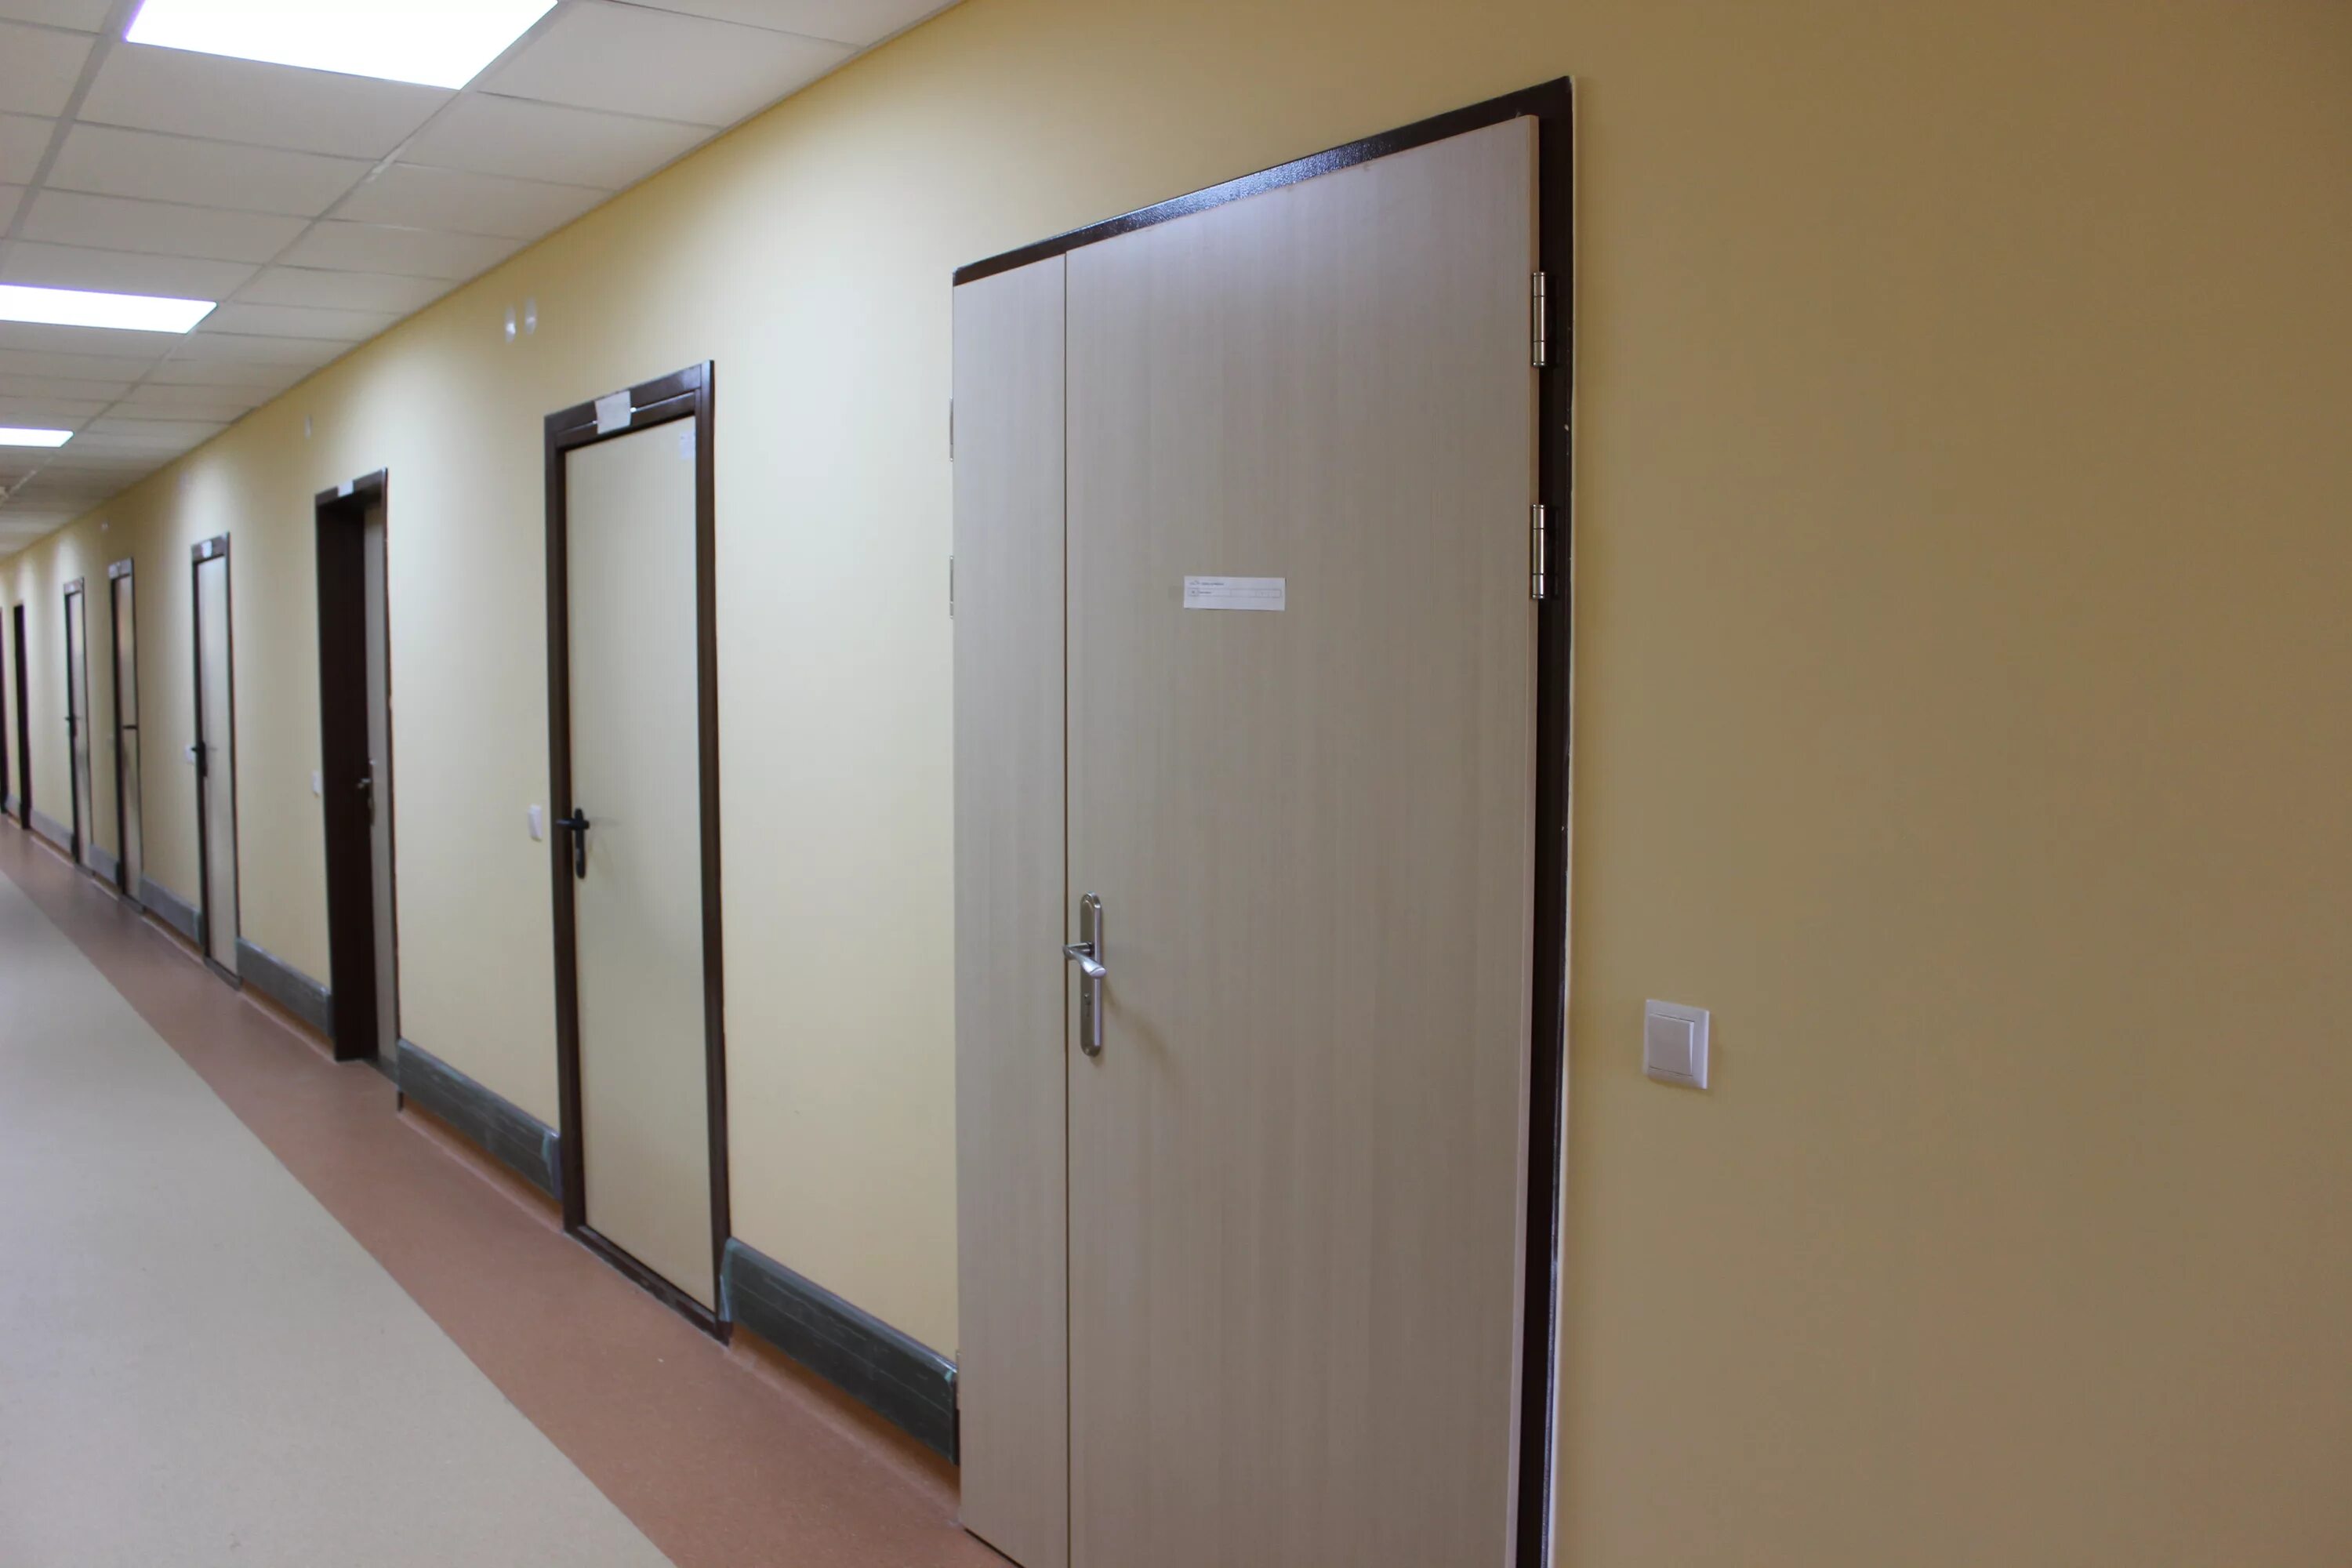 Двери медицинские екатеринбург. Рентгенозащитные двери ДП 1 уз. Рентгенозащитная дверь 2200 высотой 2000мм. Двери HPL для медицинских учреждений. Двери в мед учреждениях.